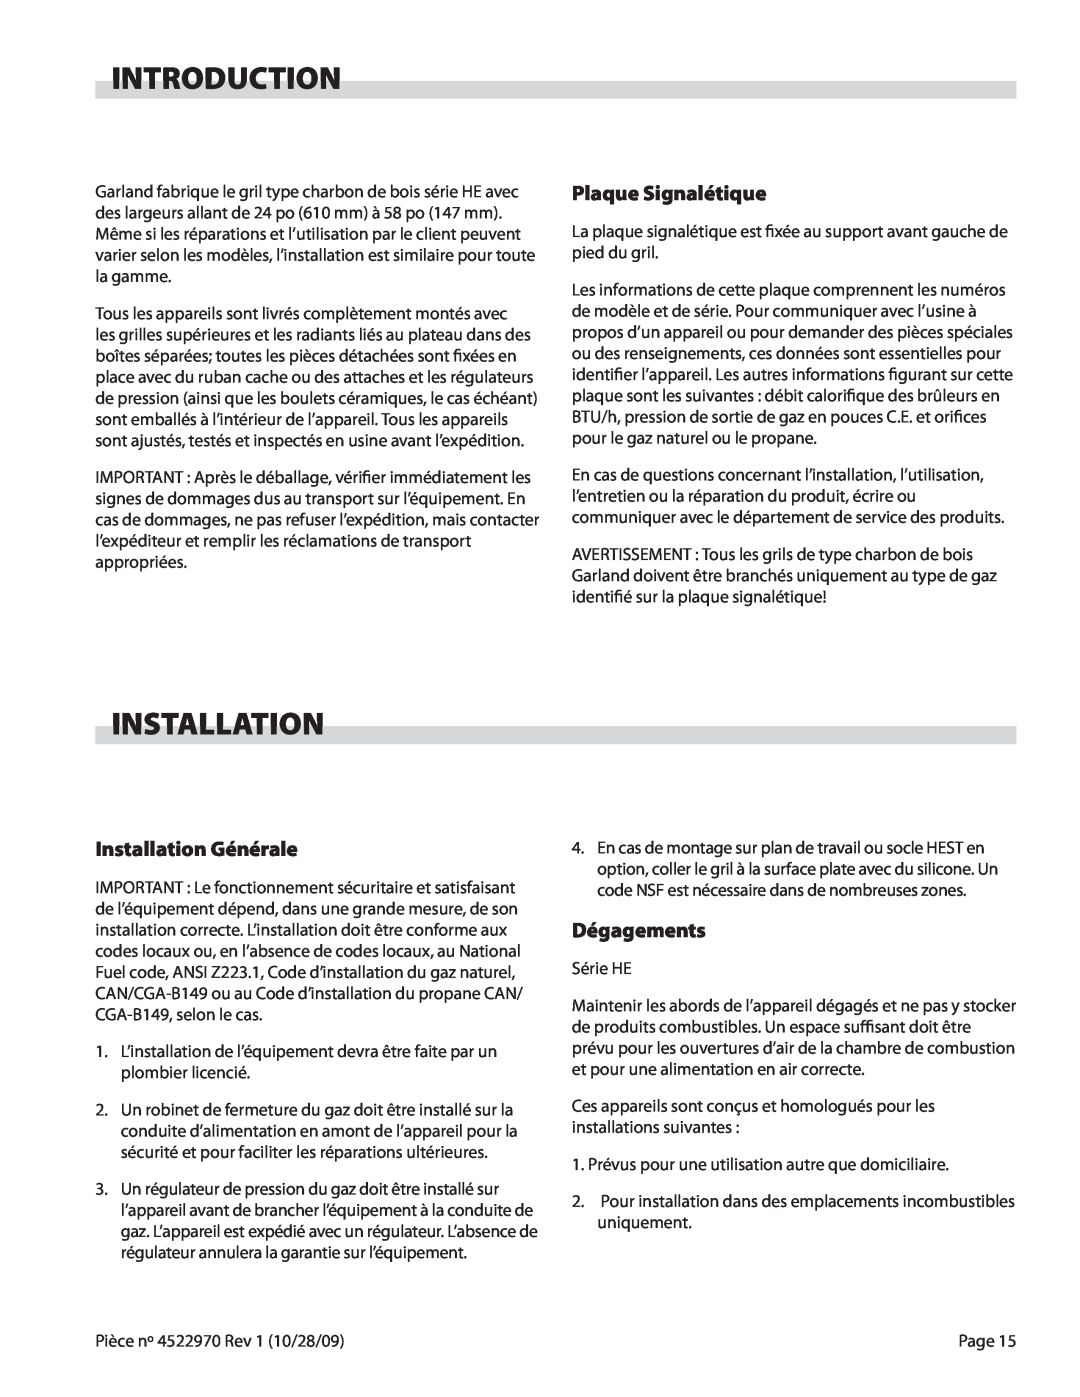 Garland 4522970 REV 1 operation manual Introduction, Plaque Signalétique, Installation Générale, Dégagements 